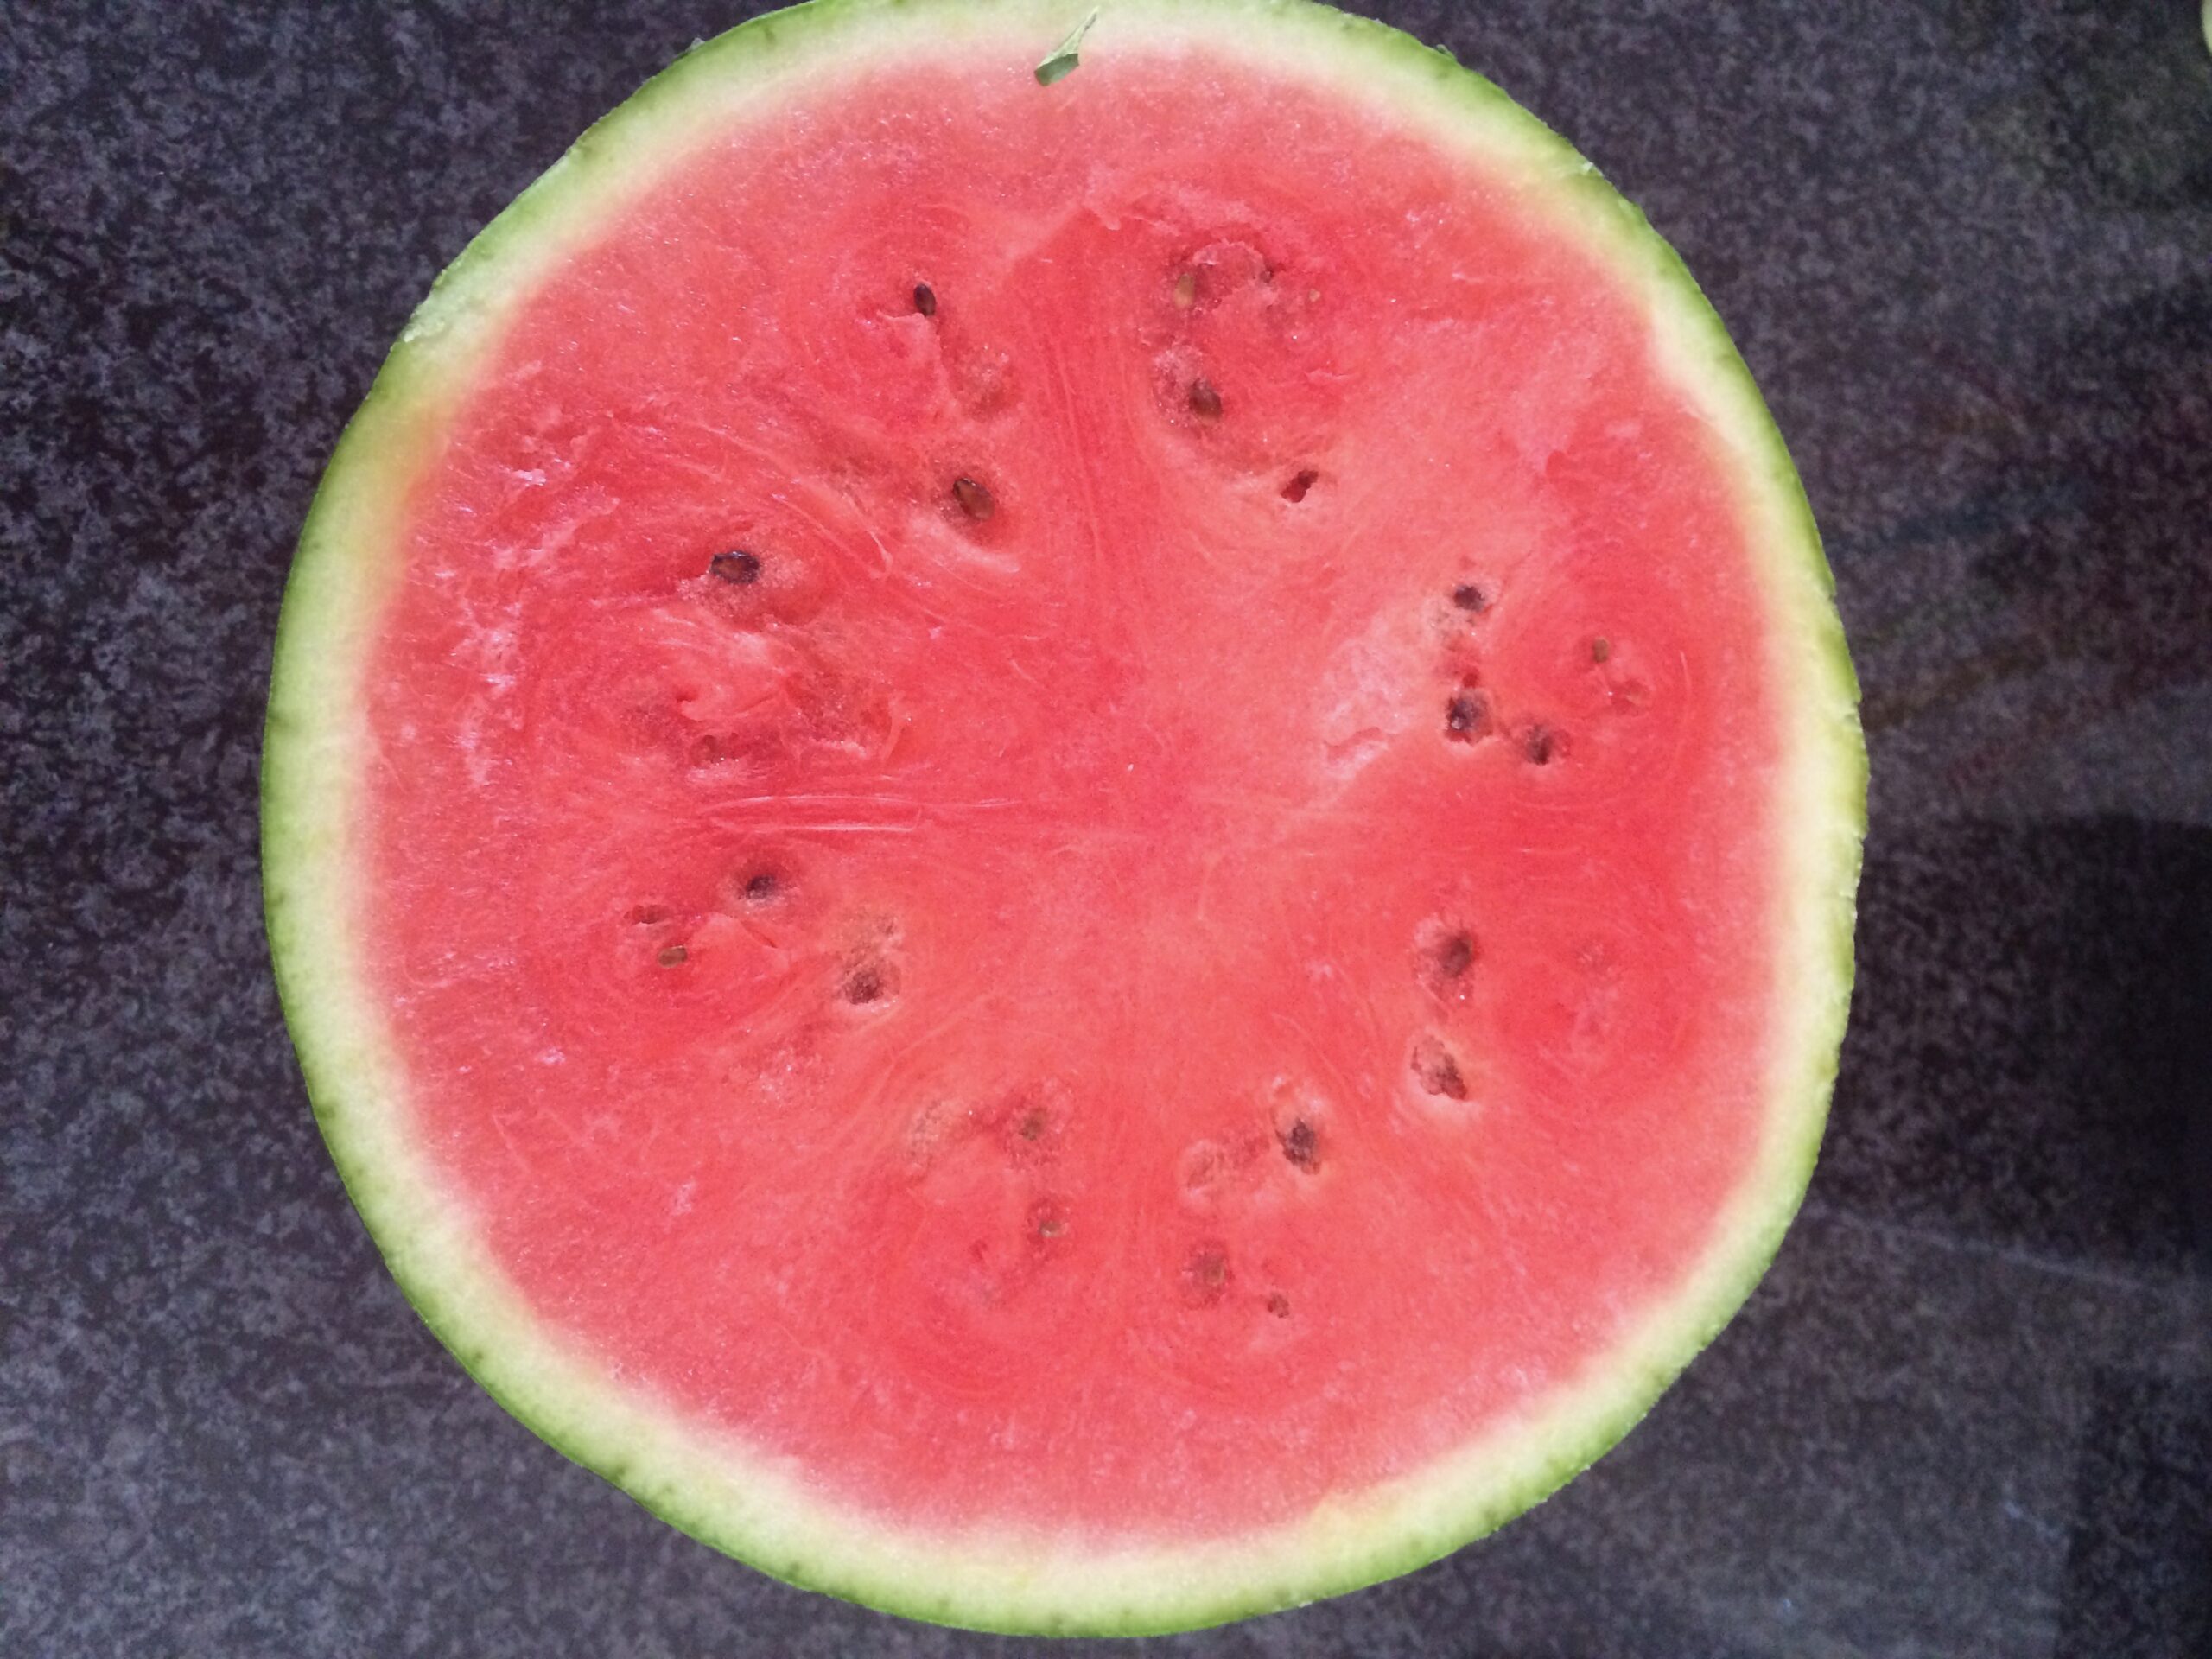 Lehmanns Wassermelone